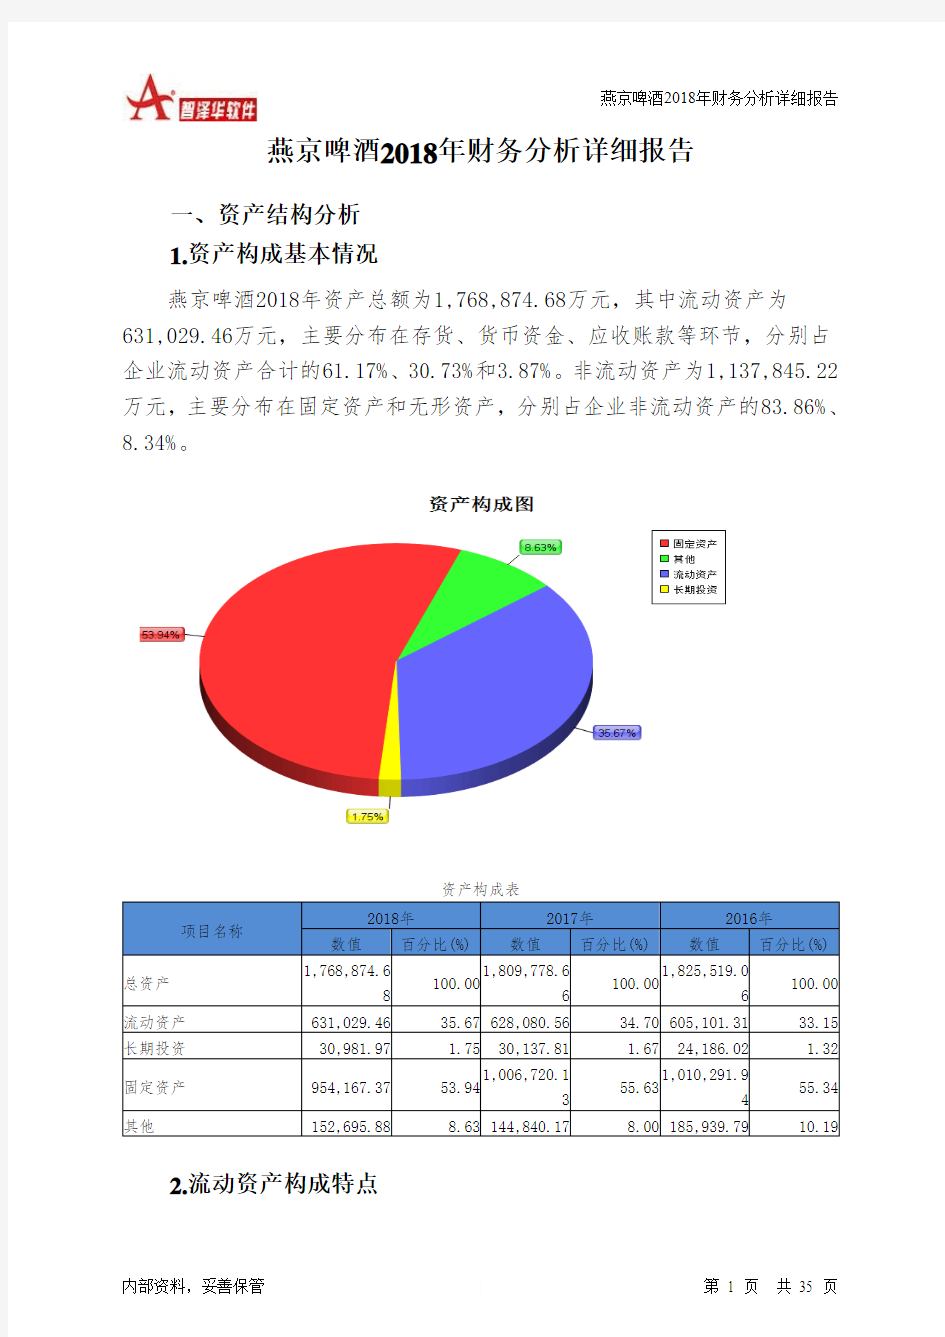 燕京啤酒2018年财务分析详细报告-智泽华